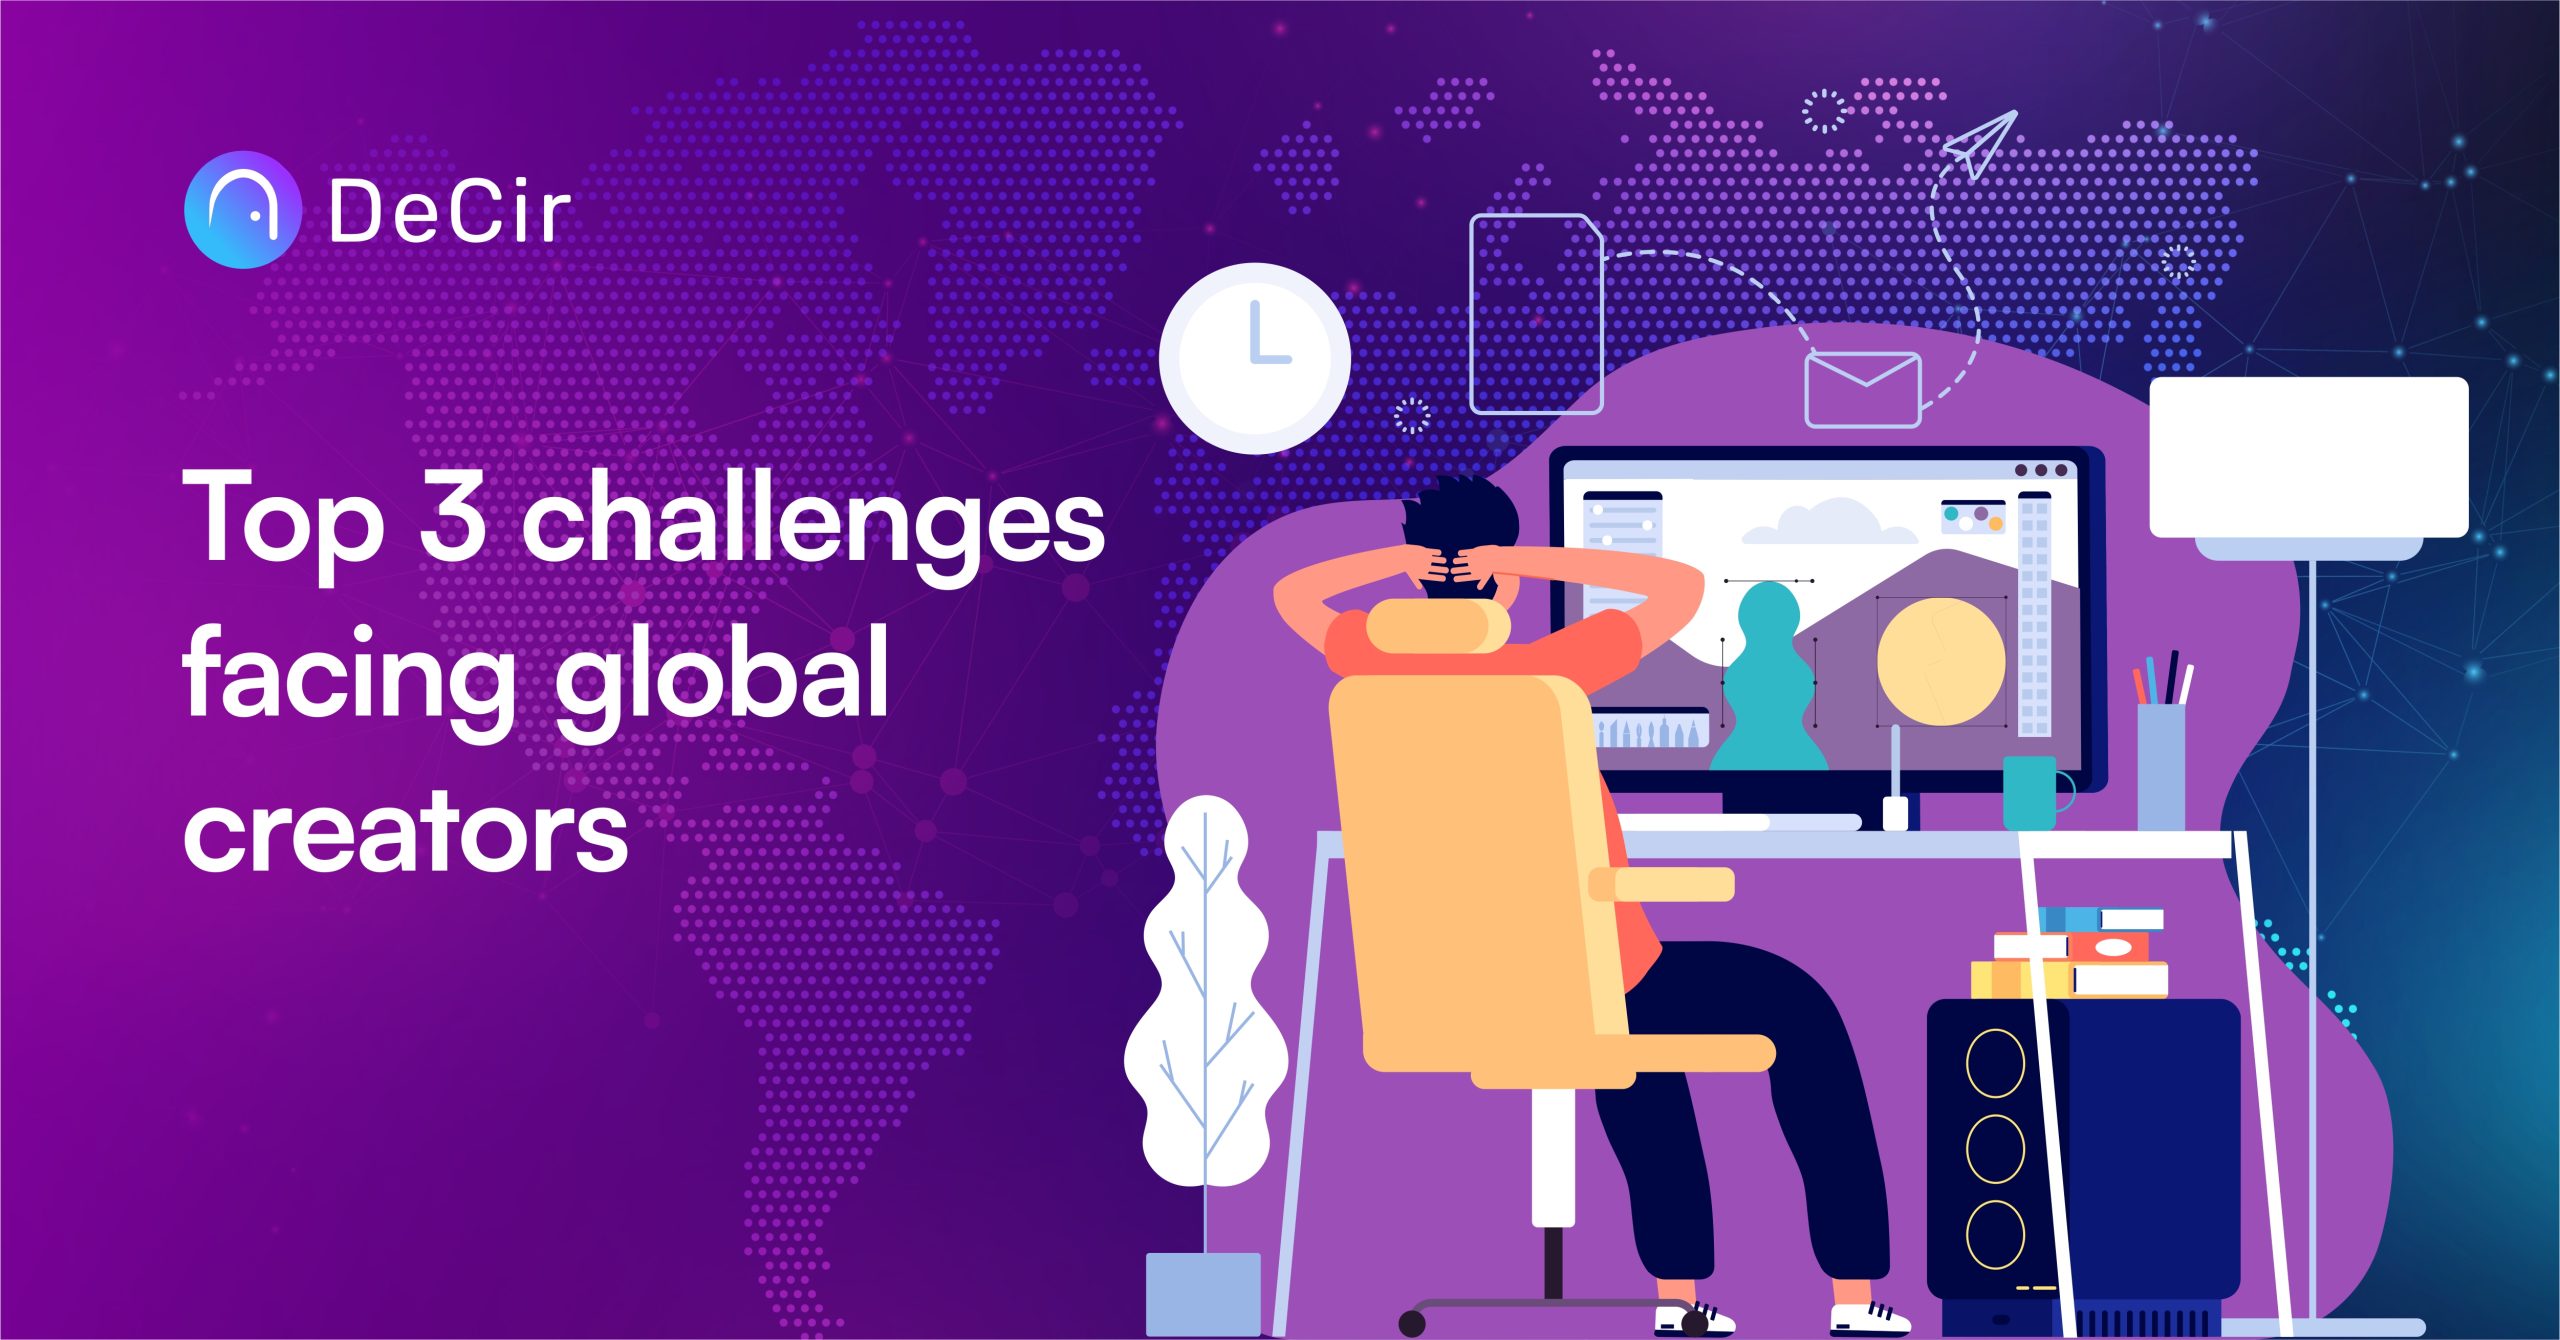 Top 3 challenges facing global creators